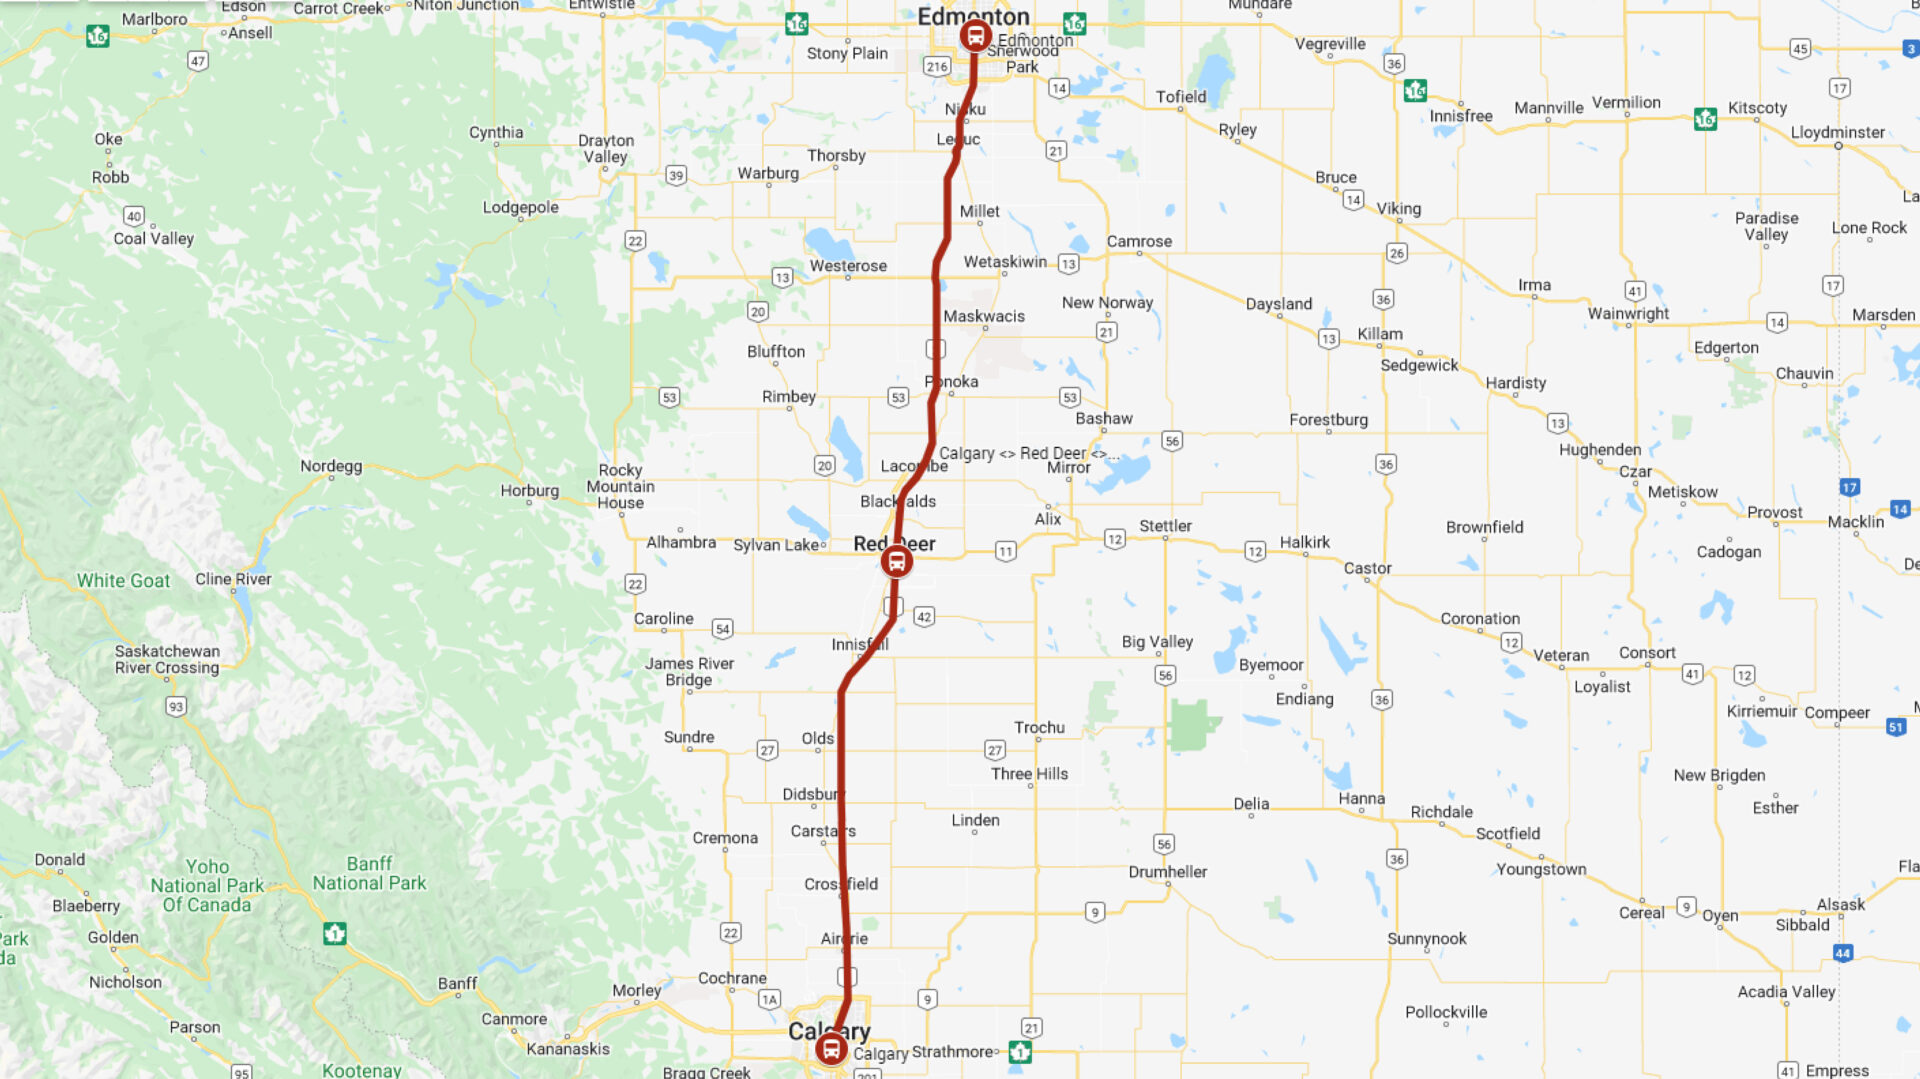 Edmonton to Calgary - Red Arrow